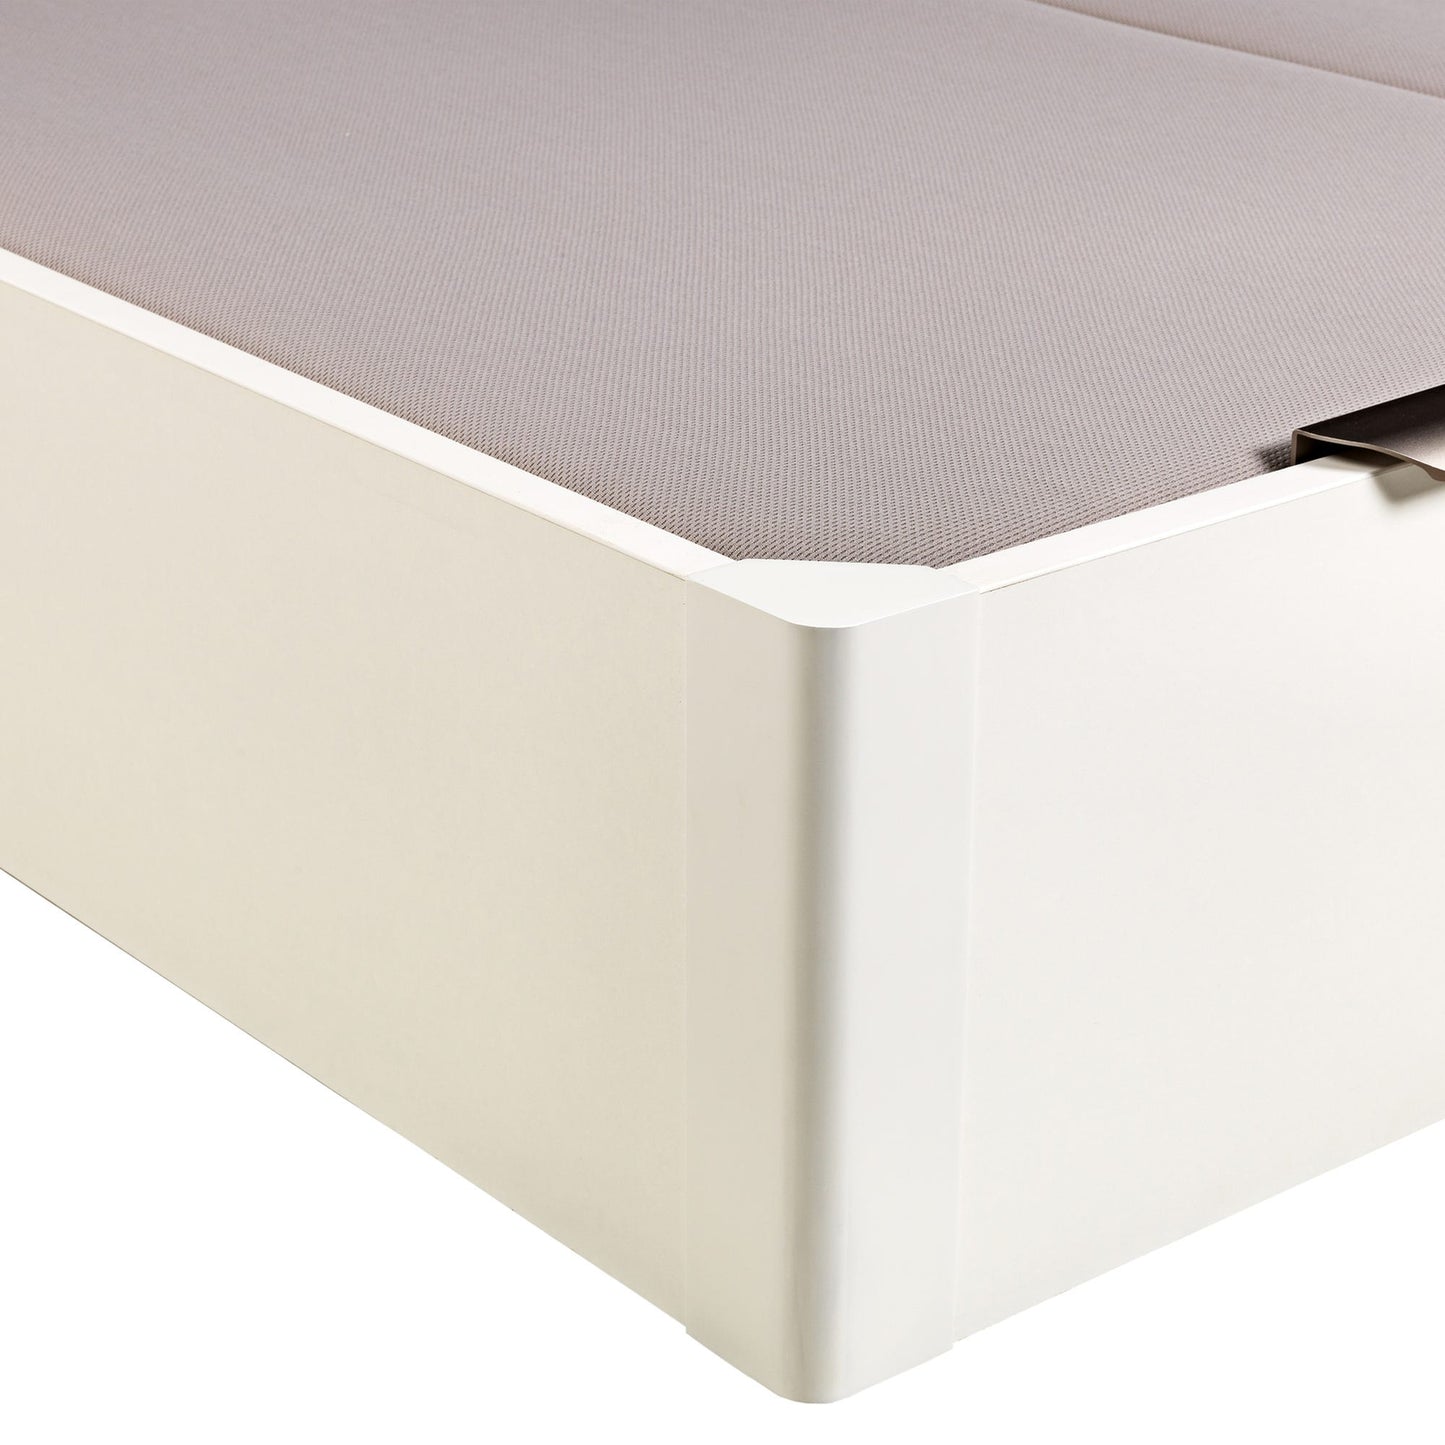 Canapé abatible de madera de tapa doble de color blanco - DESIGN - 180x220